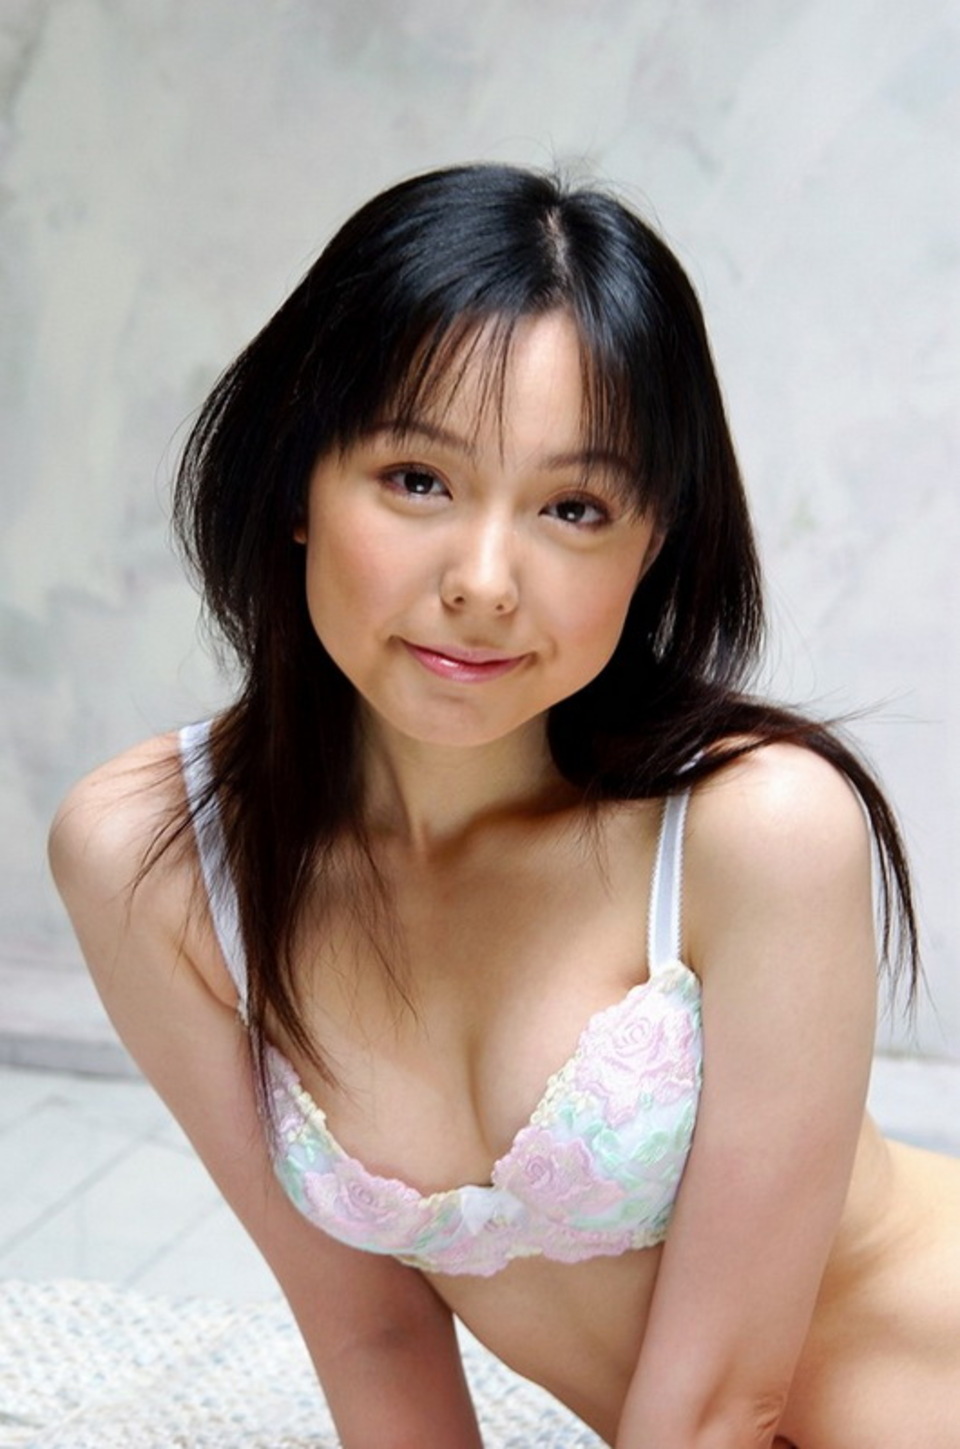 Yui Hasumi - Sweet Japanese babe